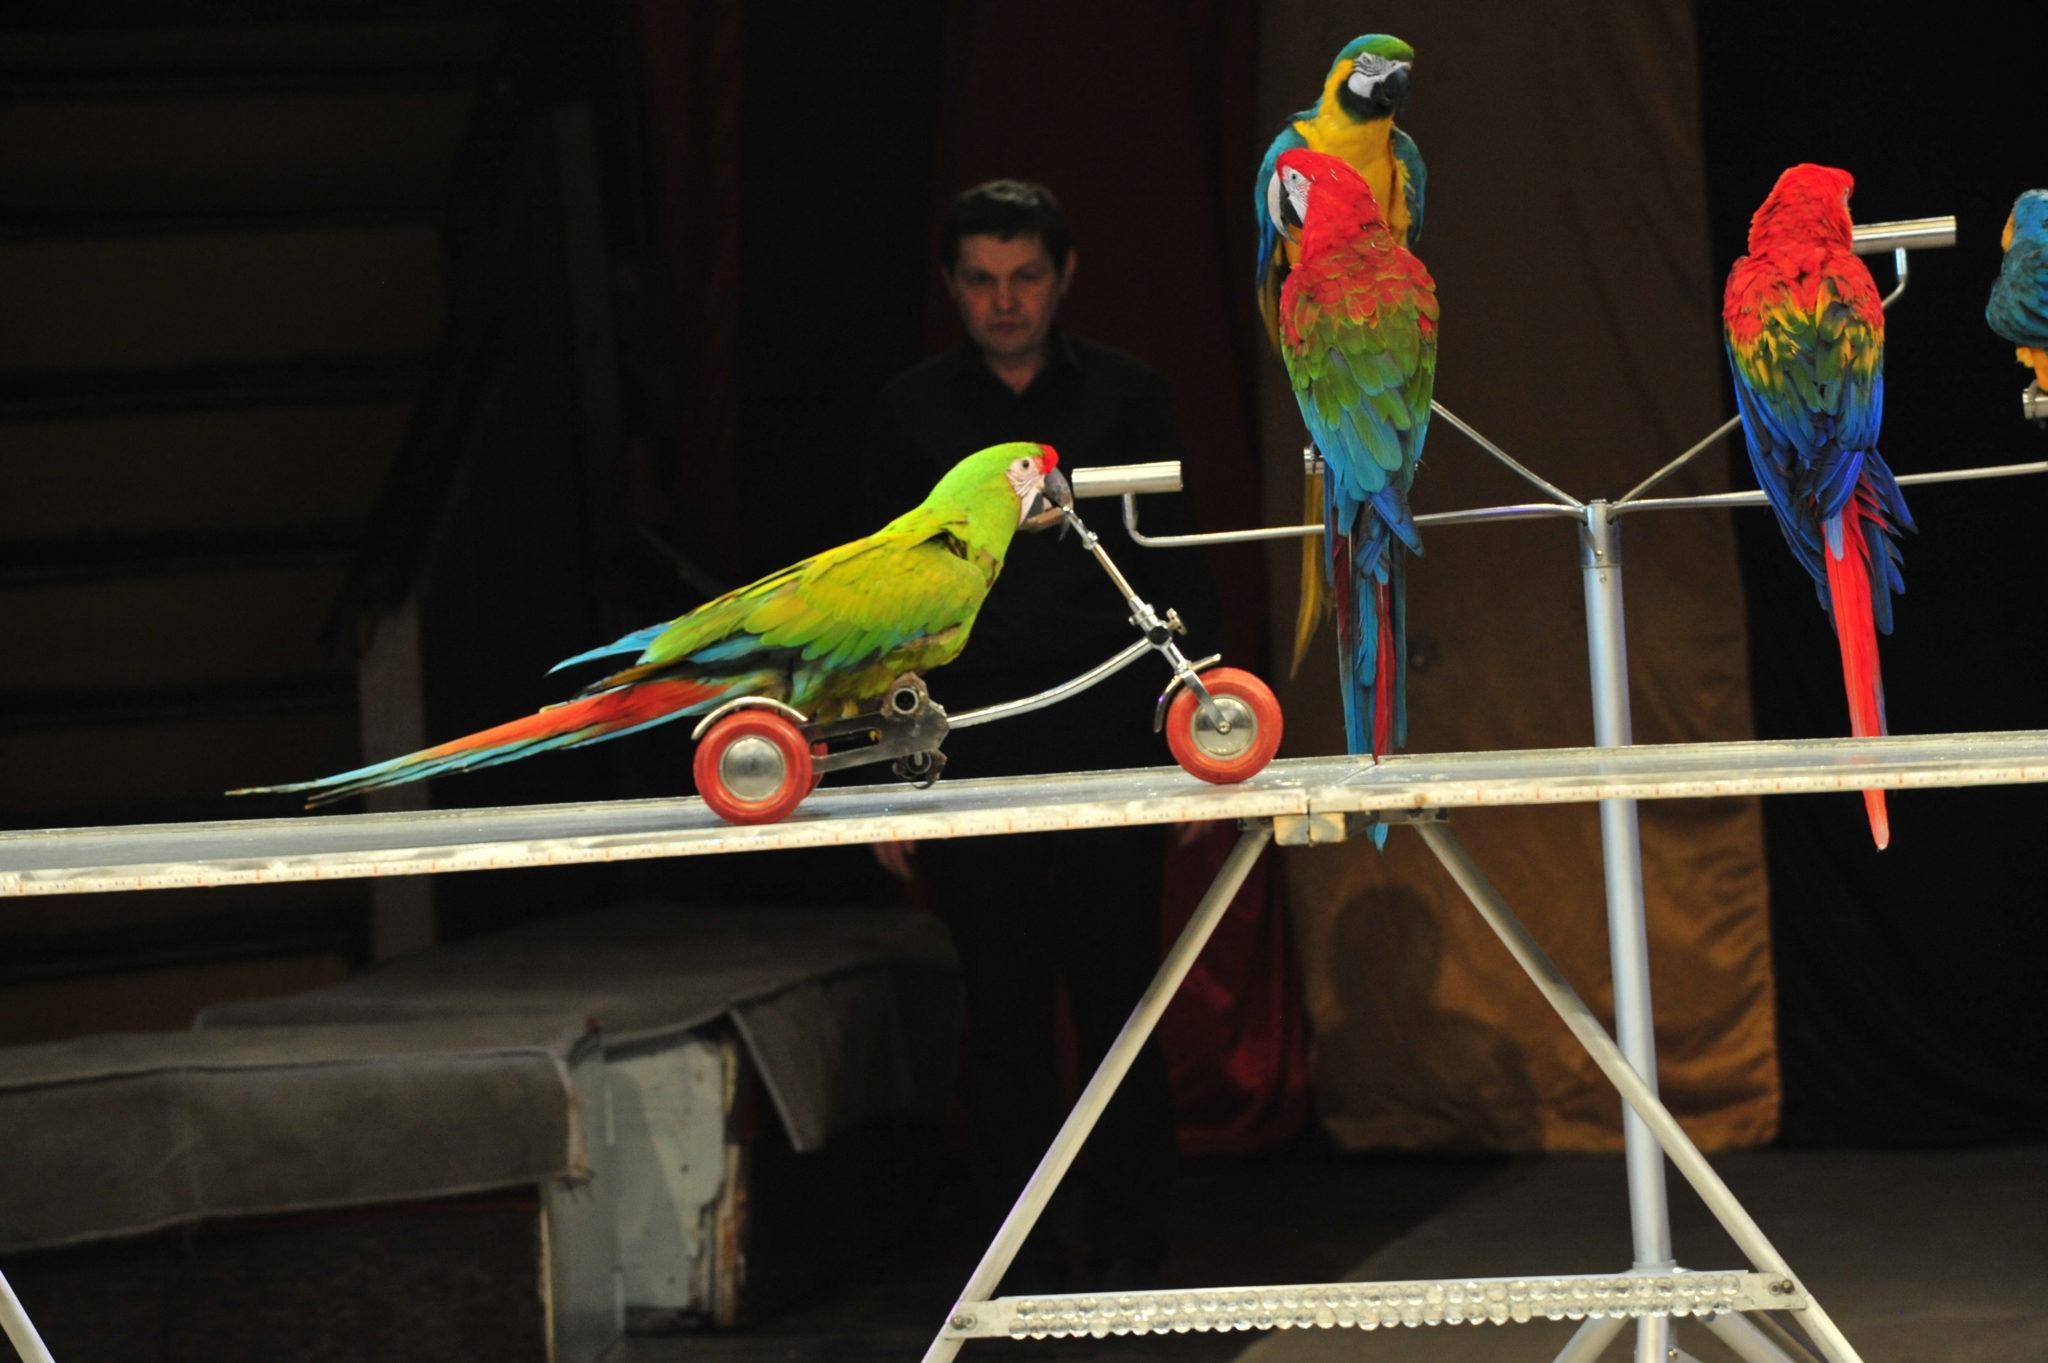 Приручение и дрессировка волнистых попугаев | волнистые попугаи | ptichka.net - домашние питомцы